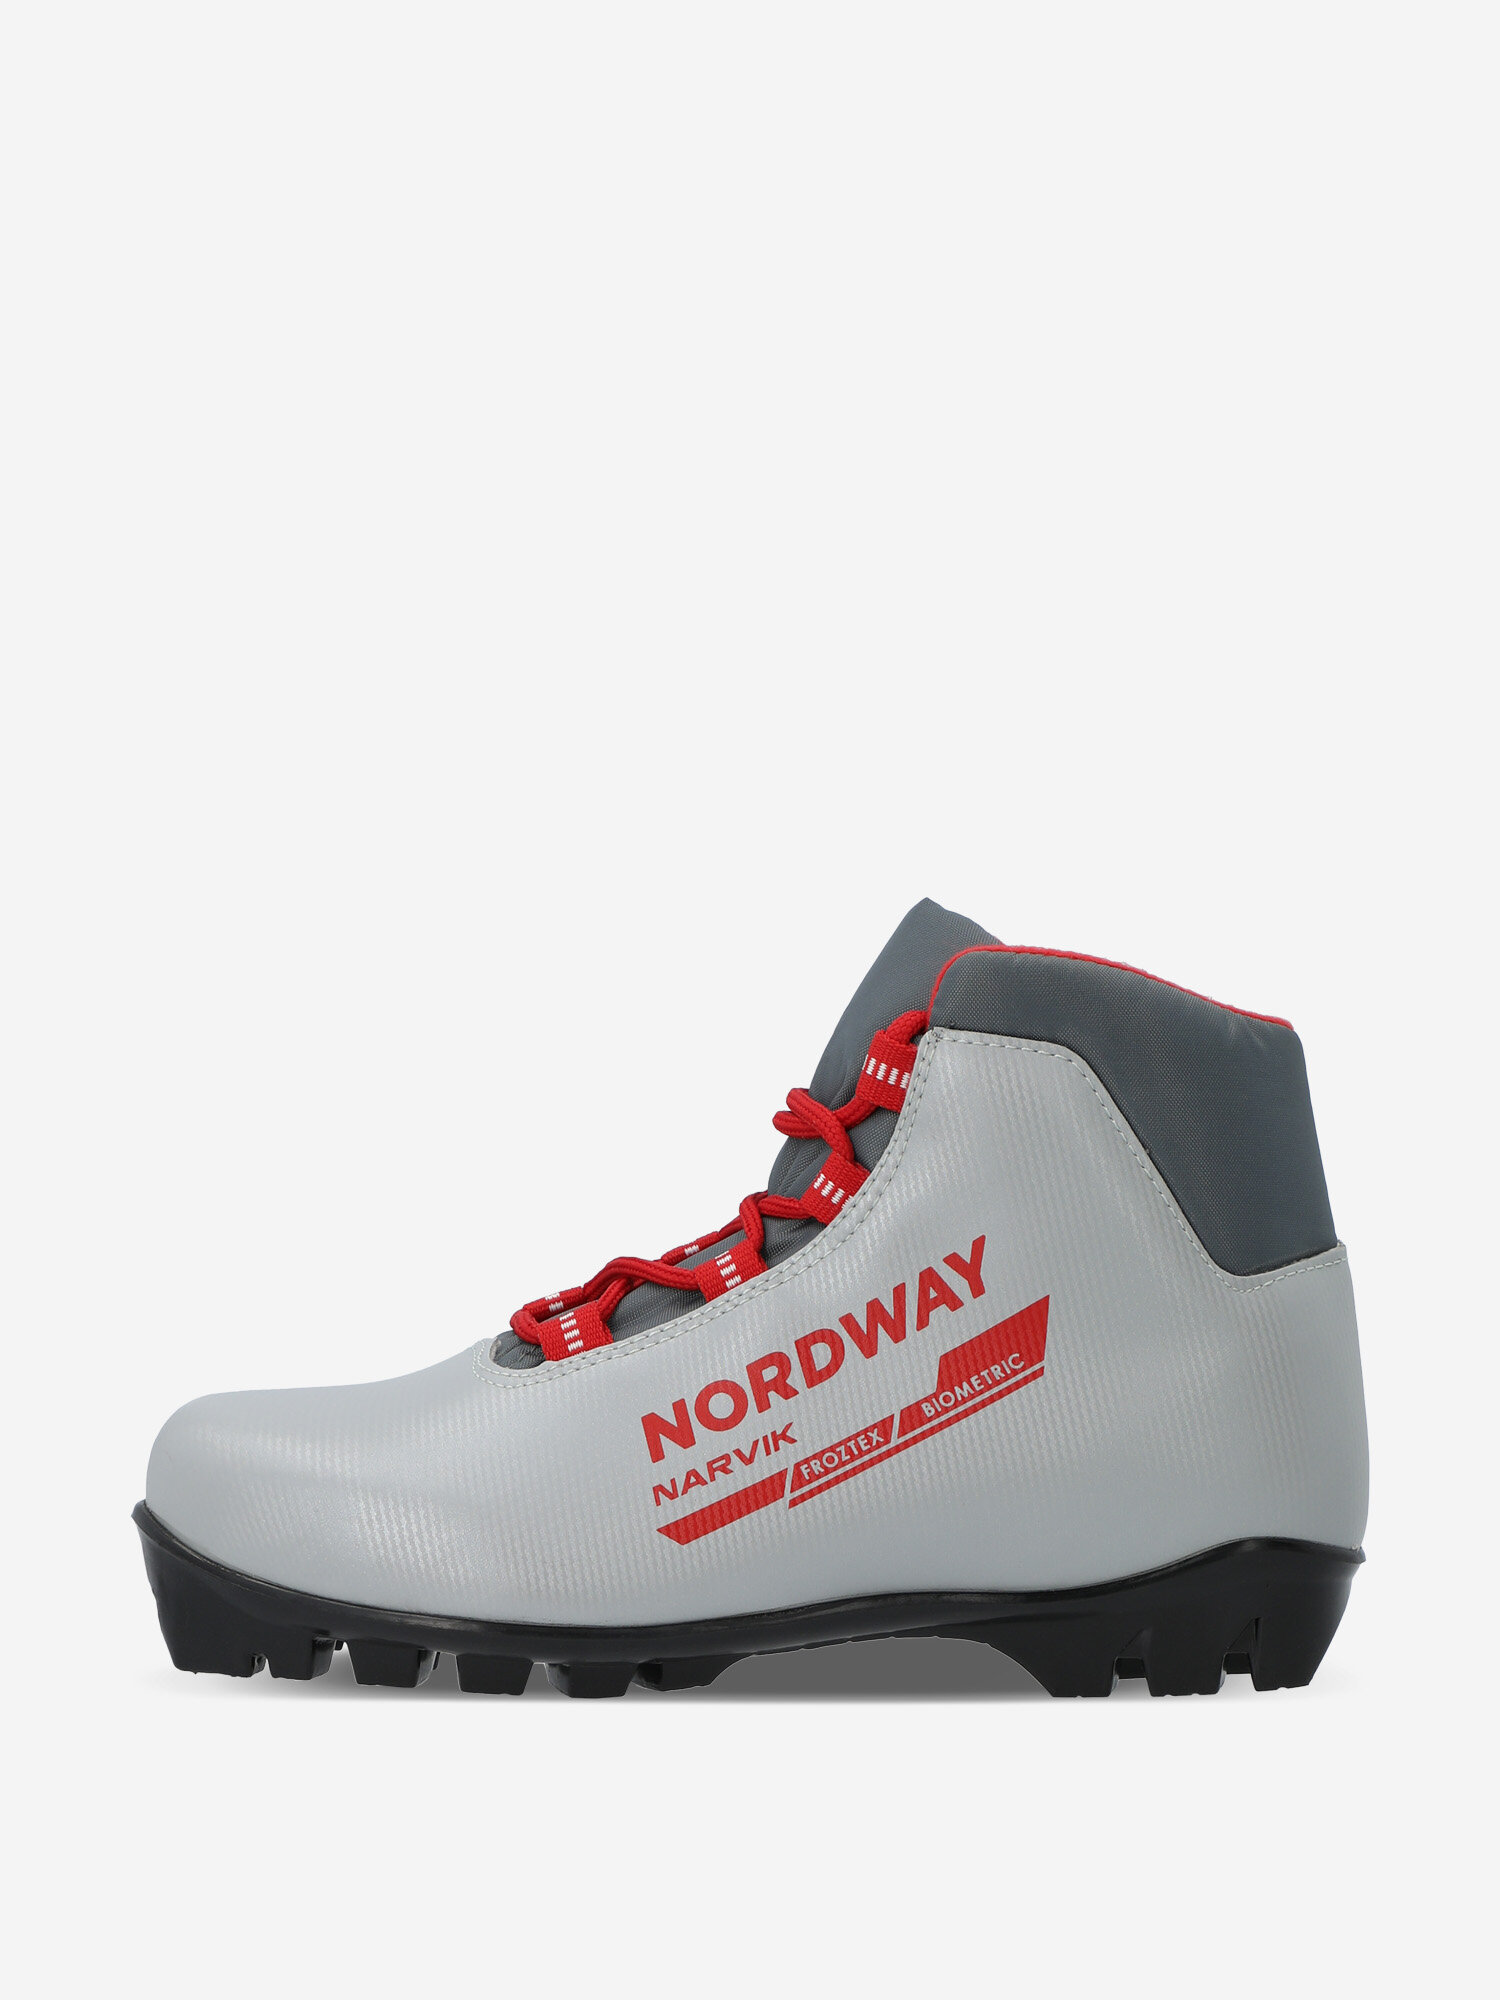 Ботинки для беговых лыж детские Nordway Narvik NNN Красный; RUS: 29, Ориг: 29